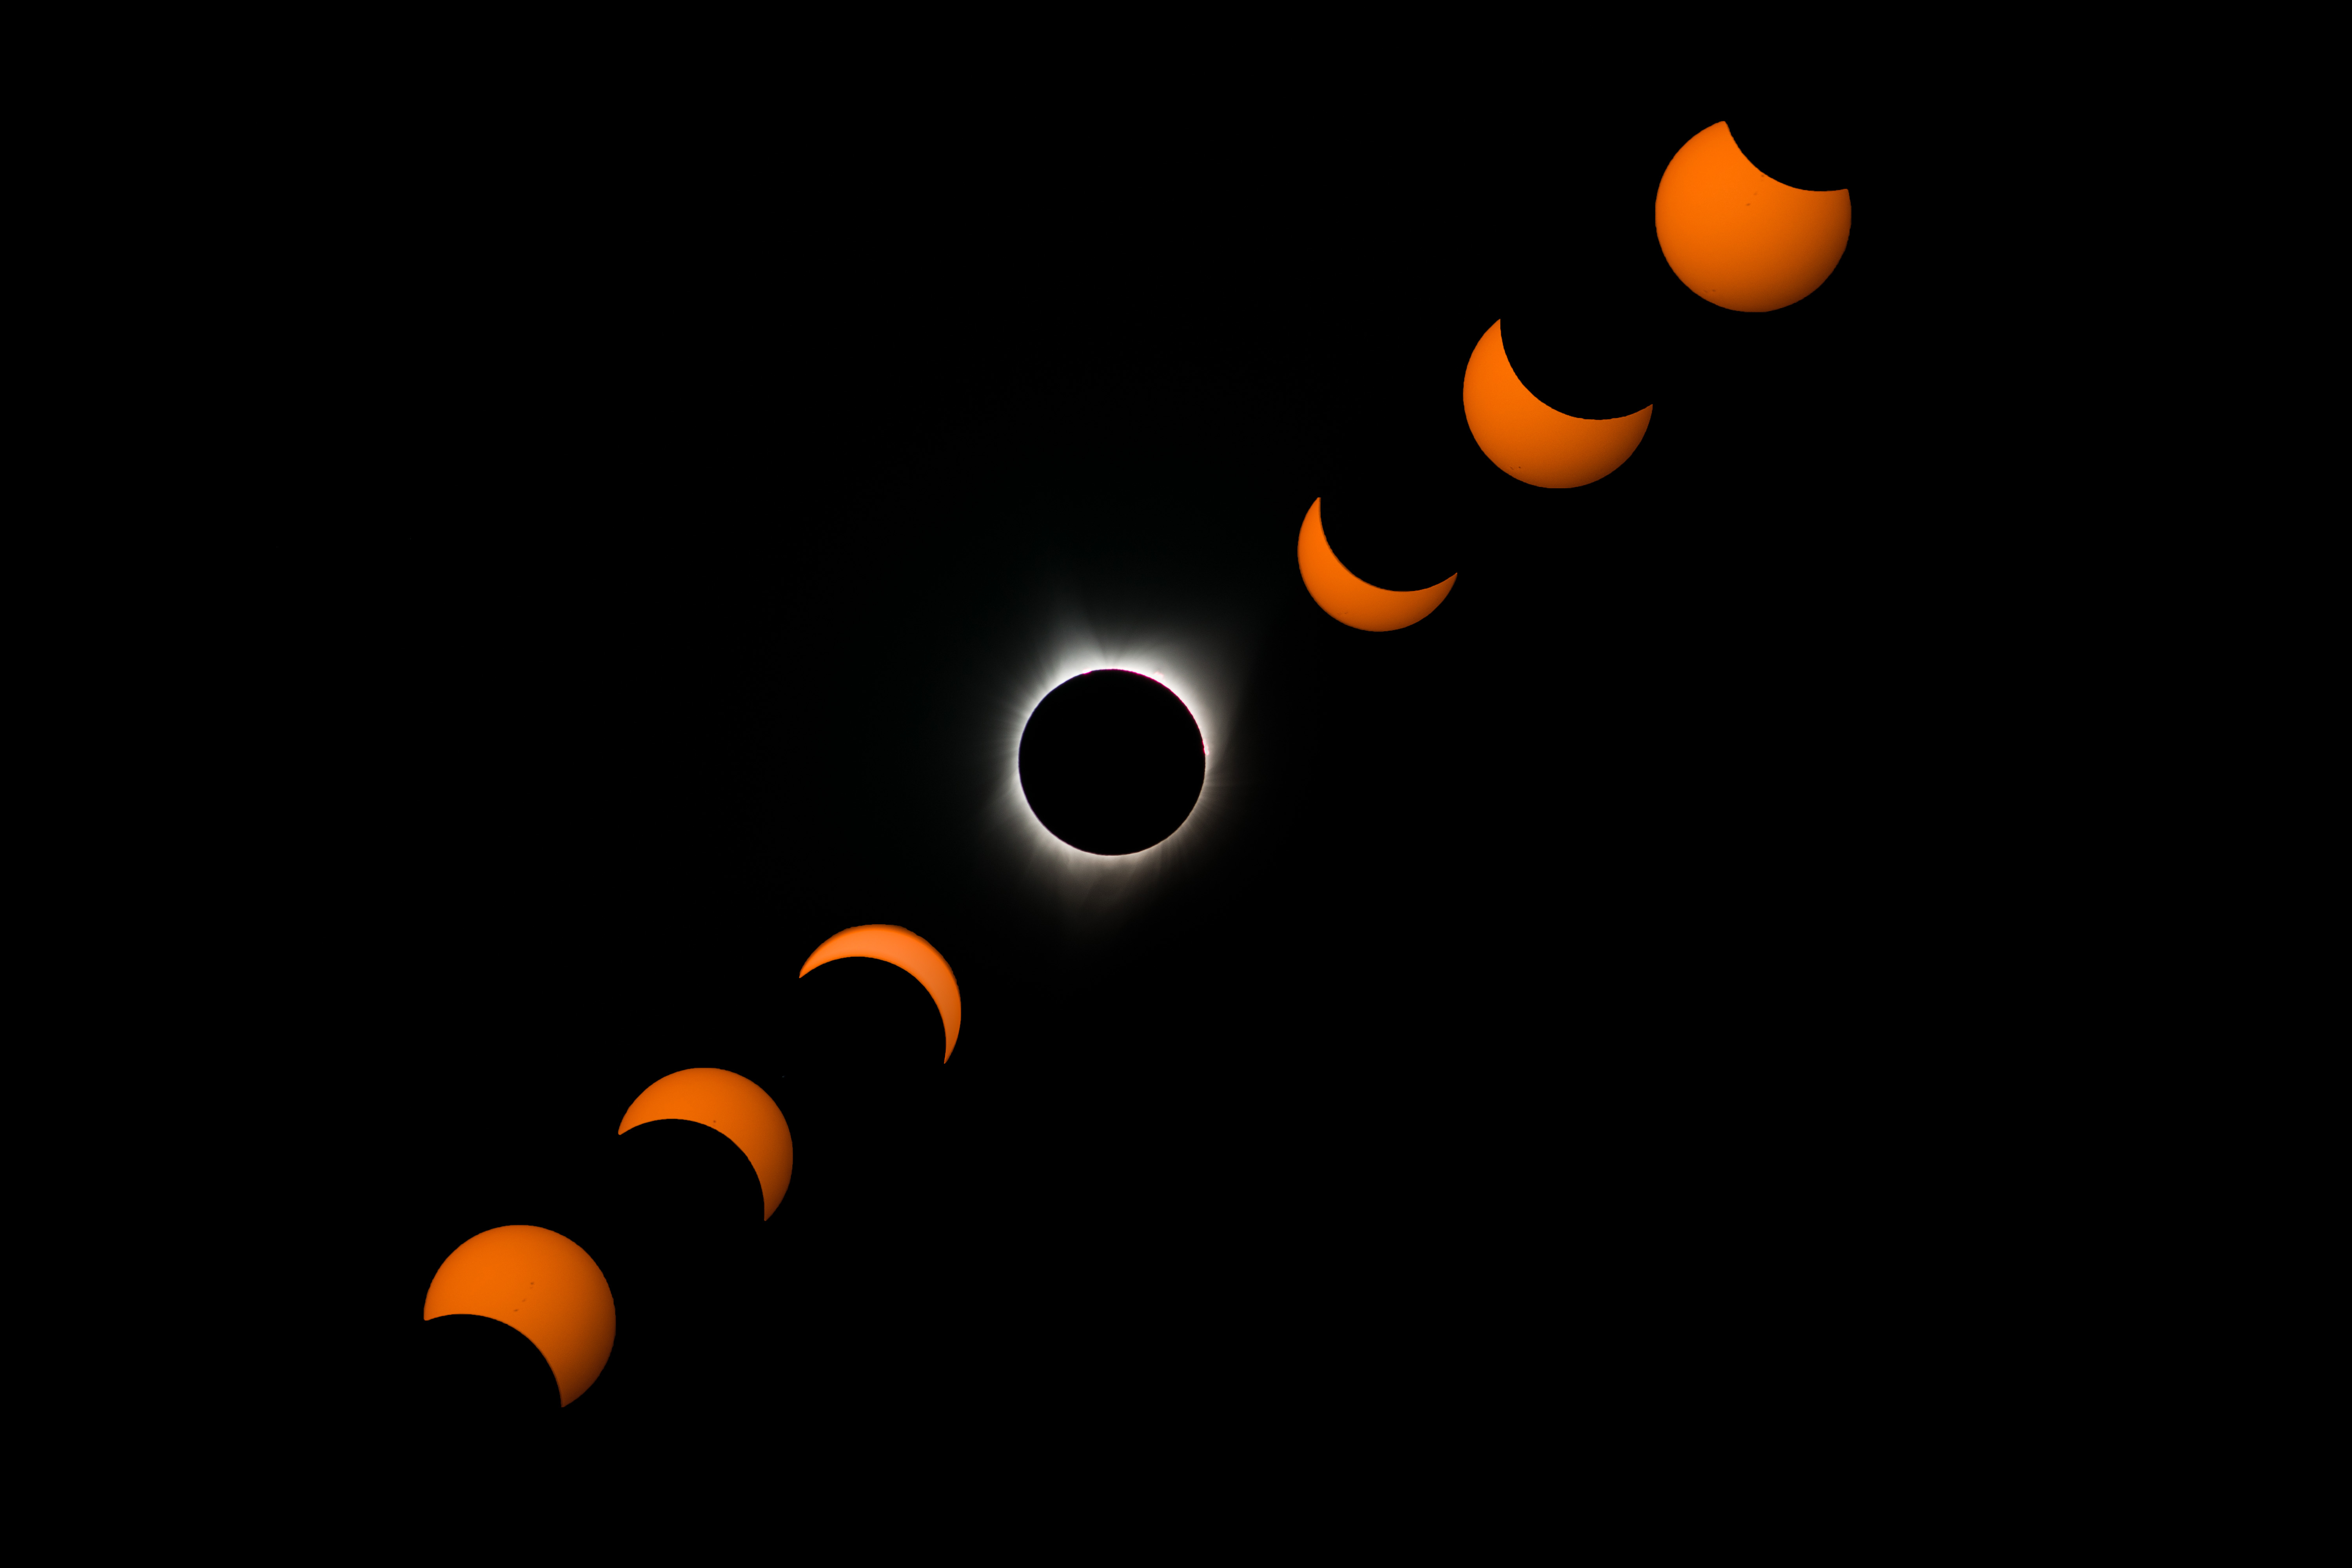 Fotografia do Eclipse Solar